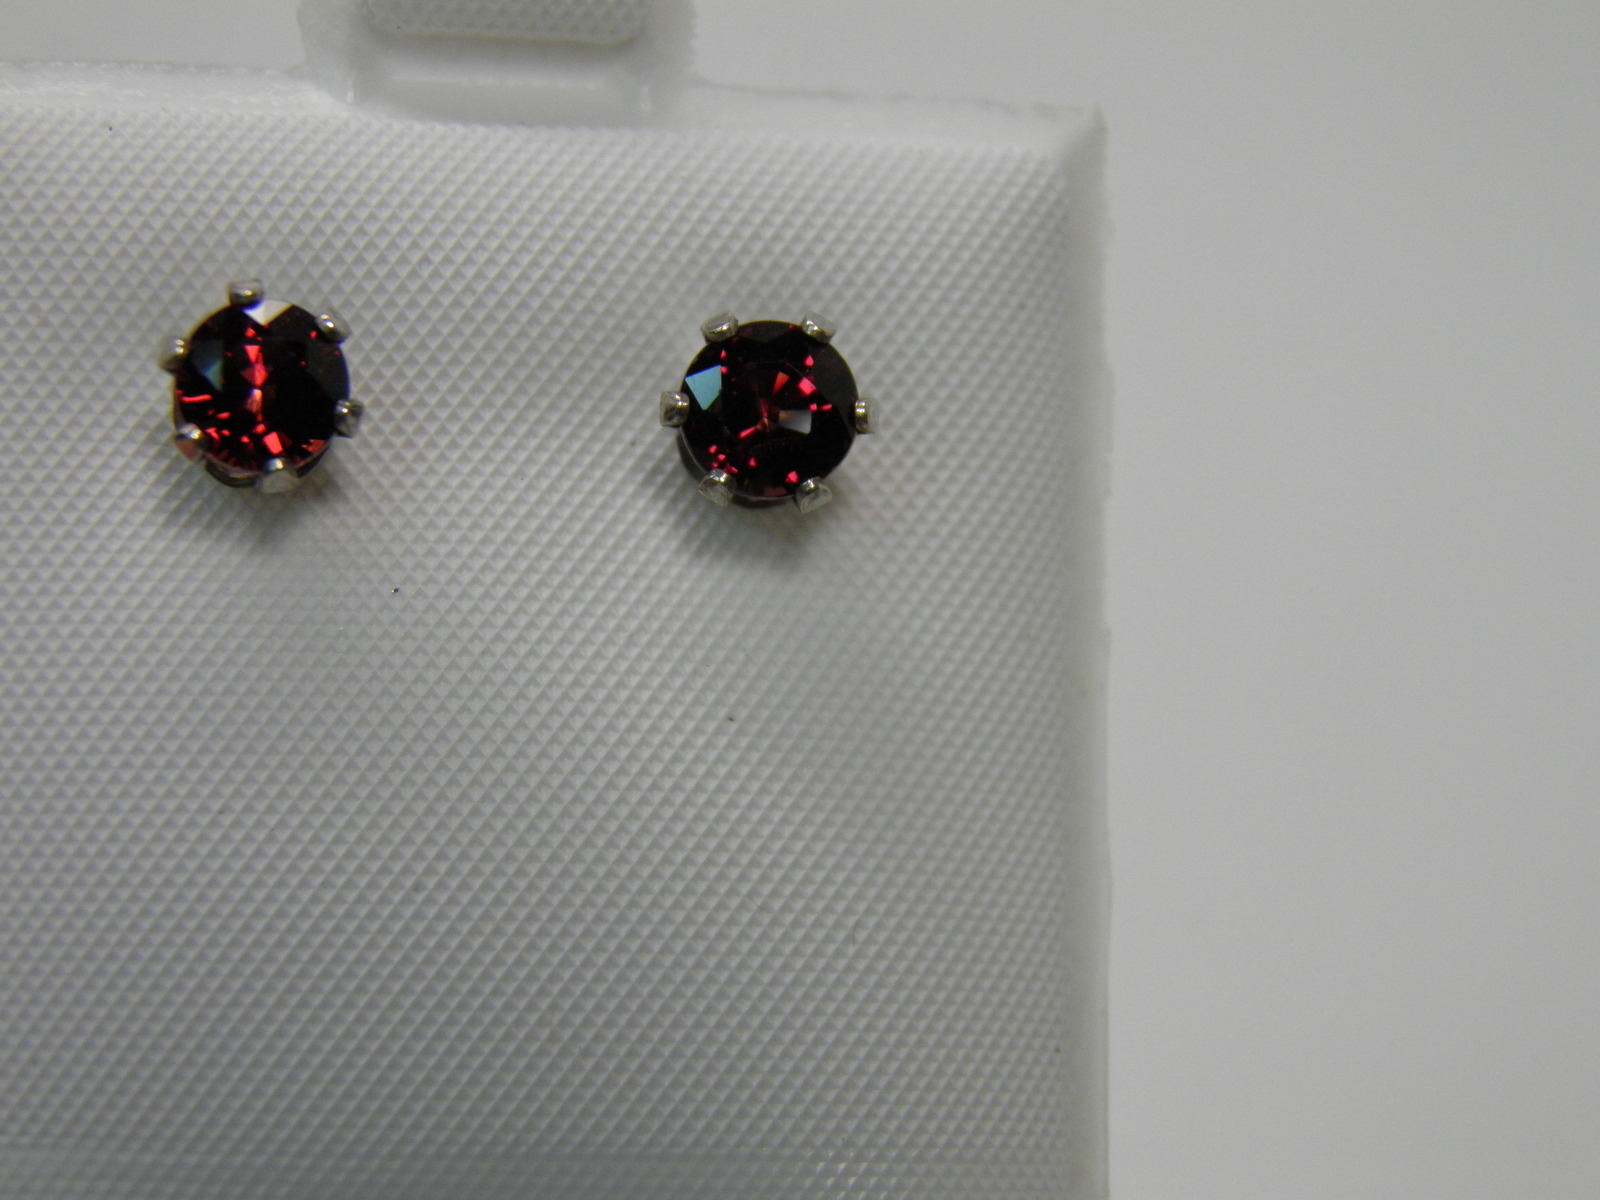 New Sterling Silver stud earrings ~ 1.50ctw Rhodolite Garnets 5mm